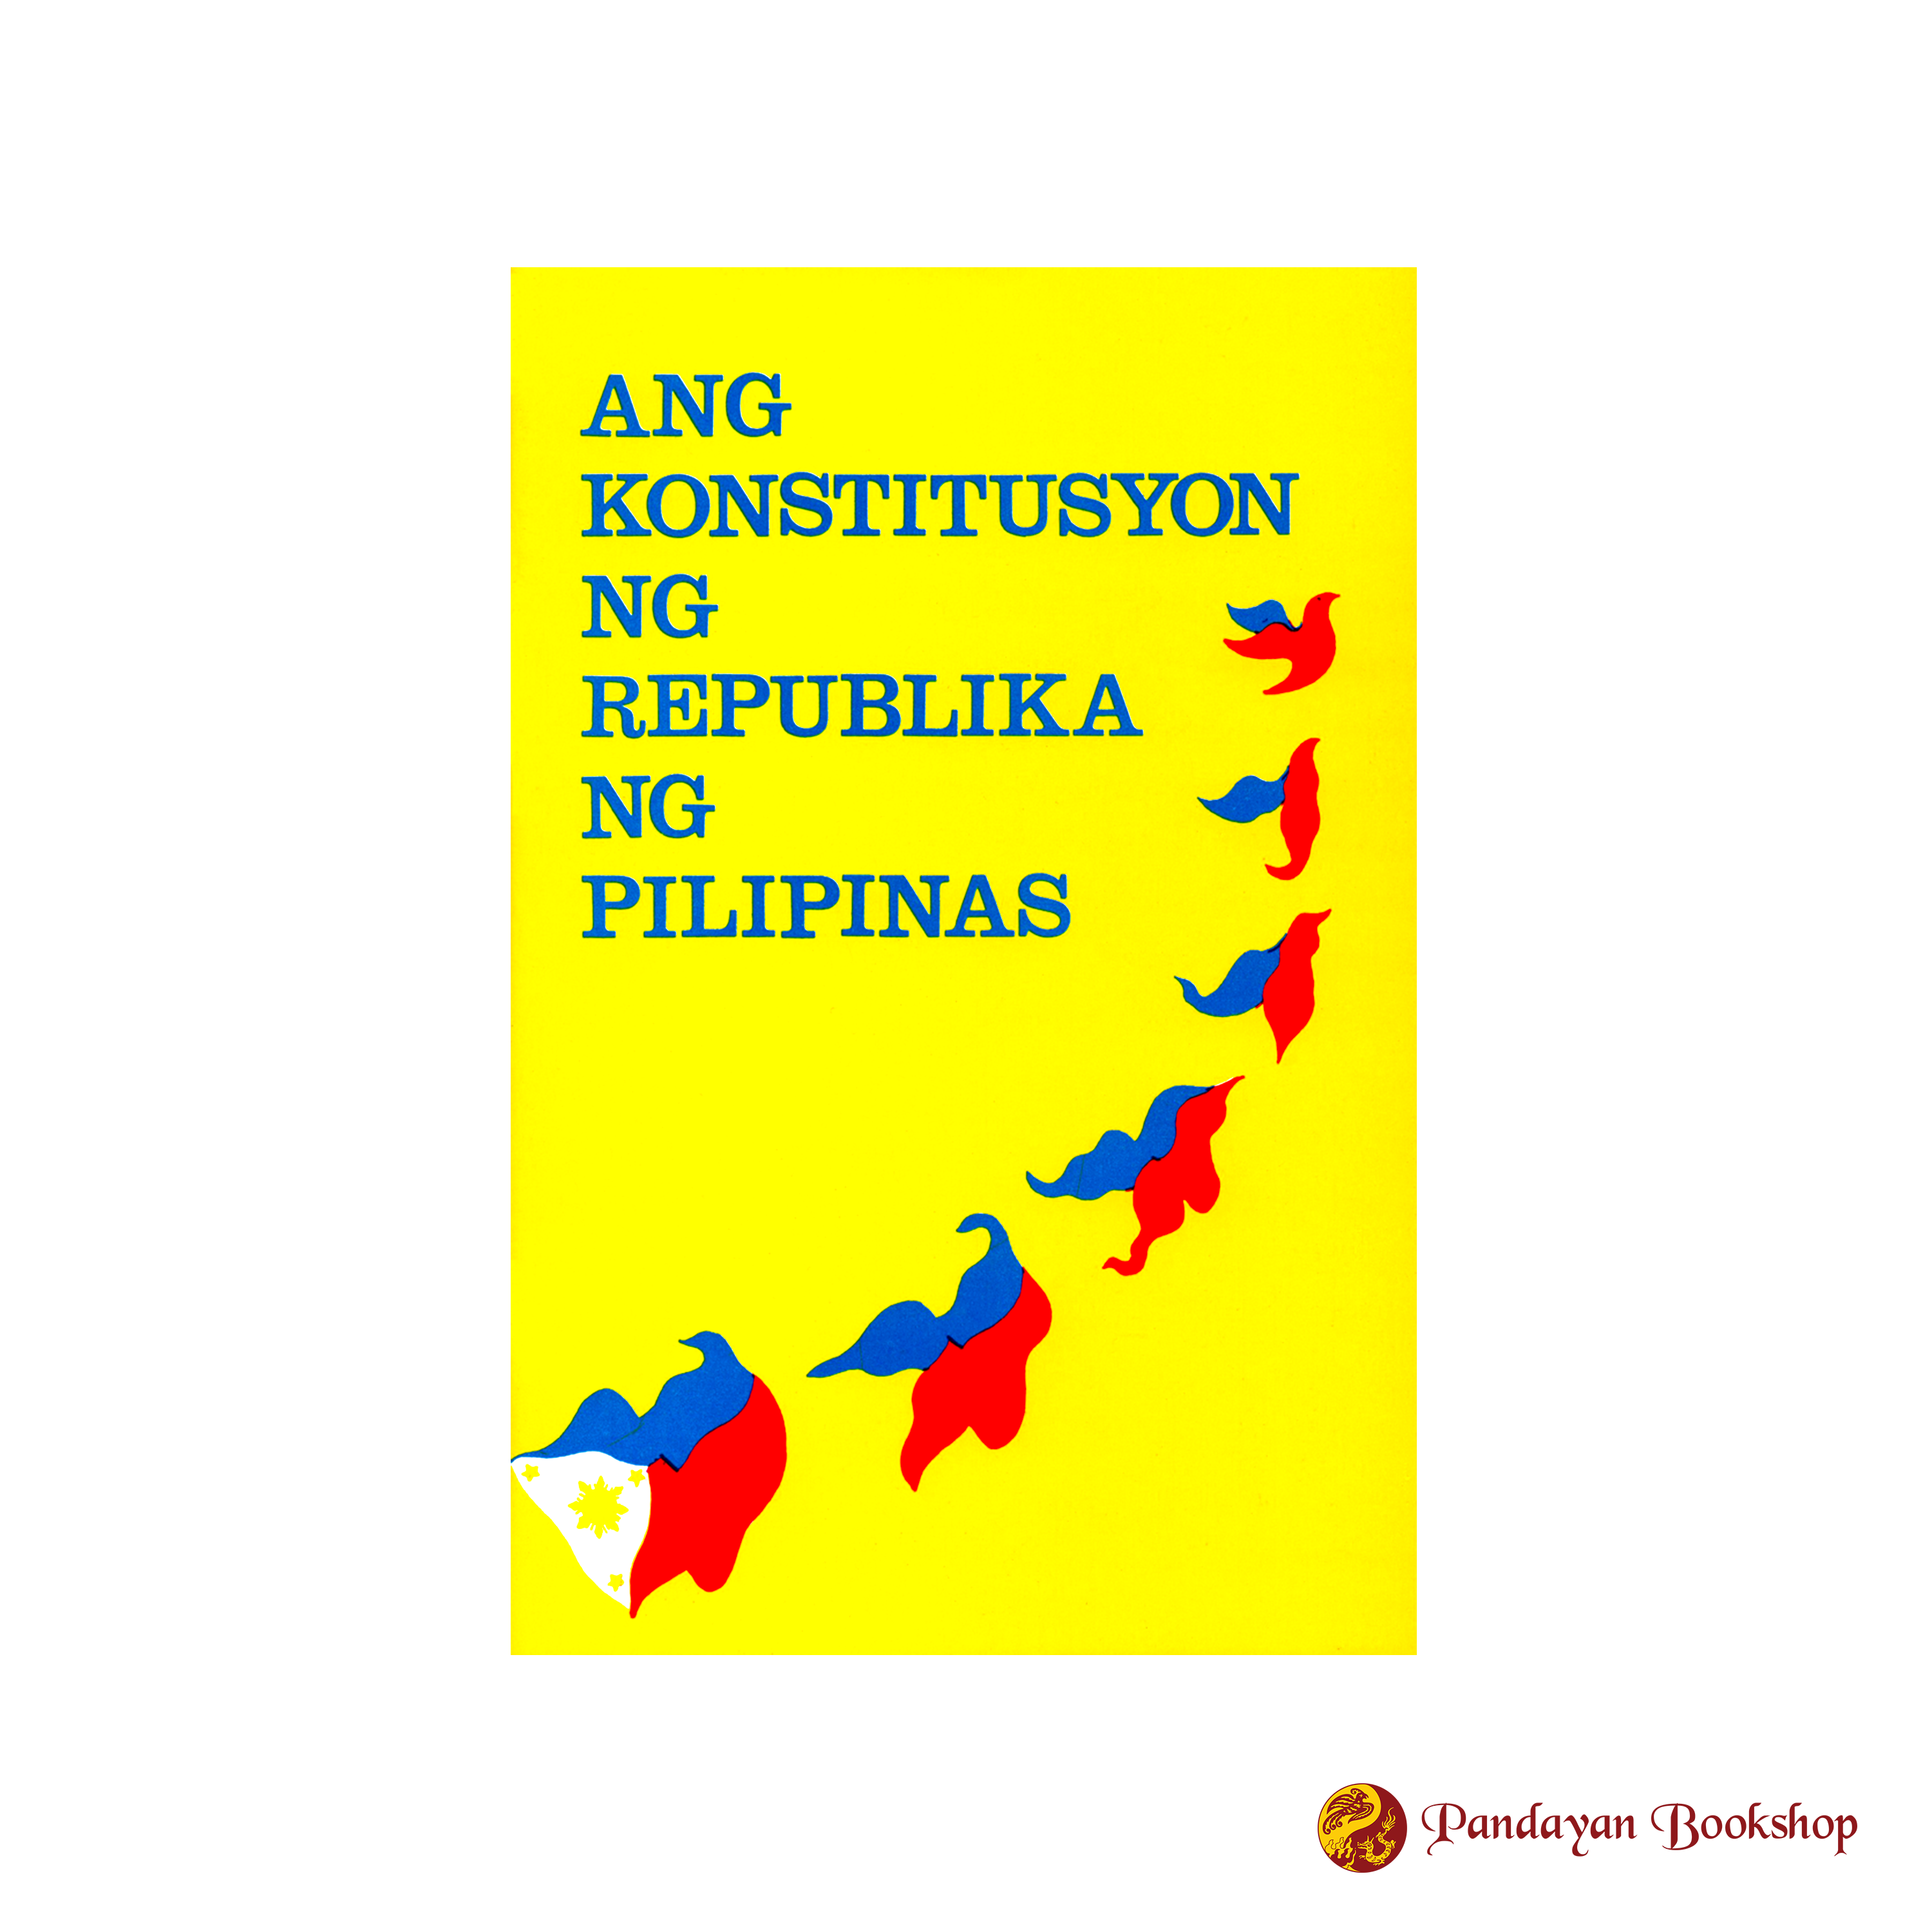 Ang Konstitusyon ng Republika ng Pilipinas